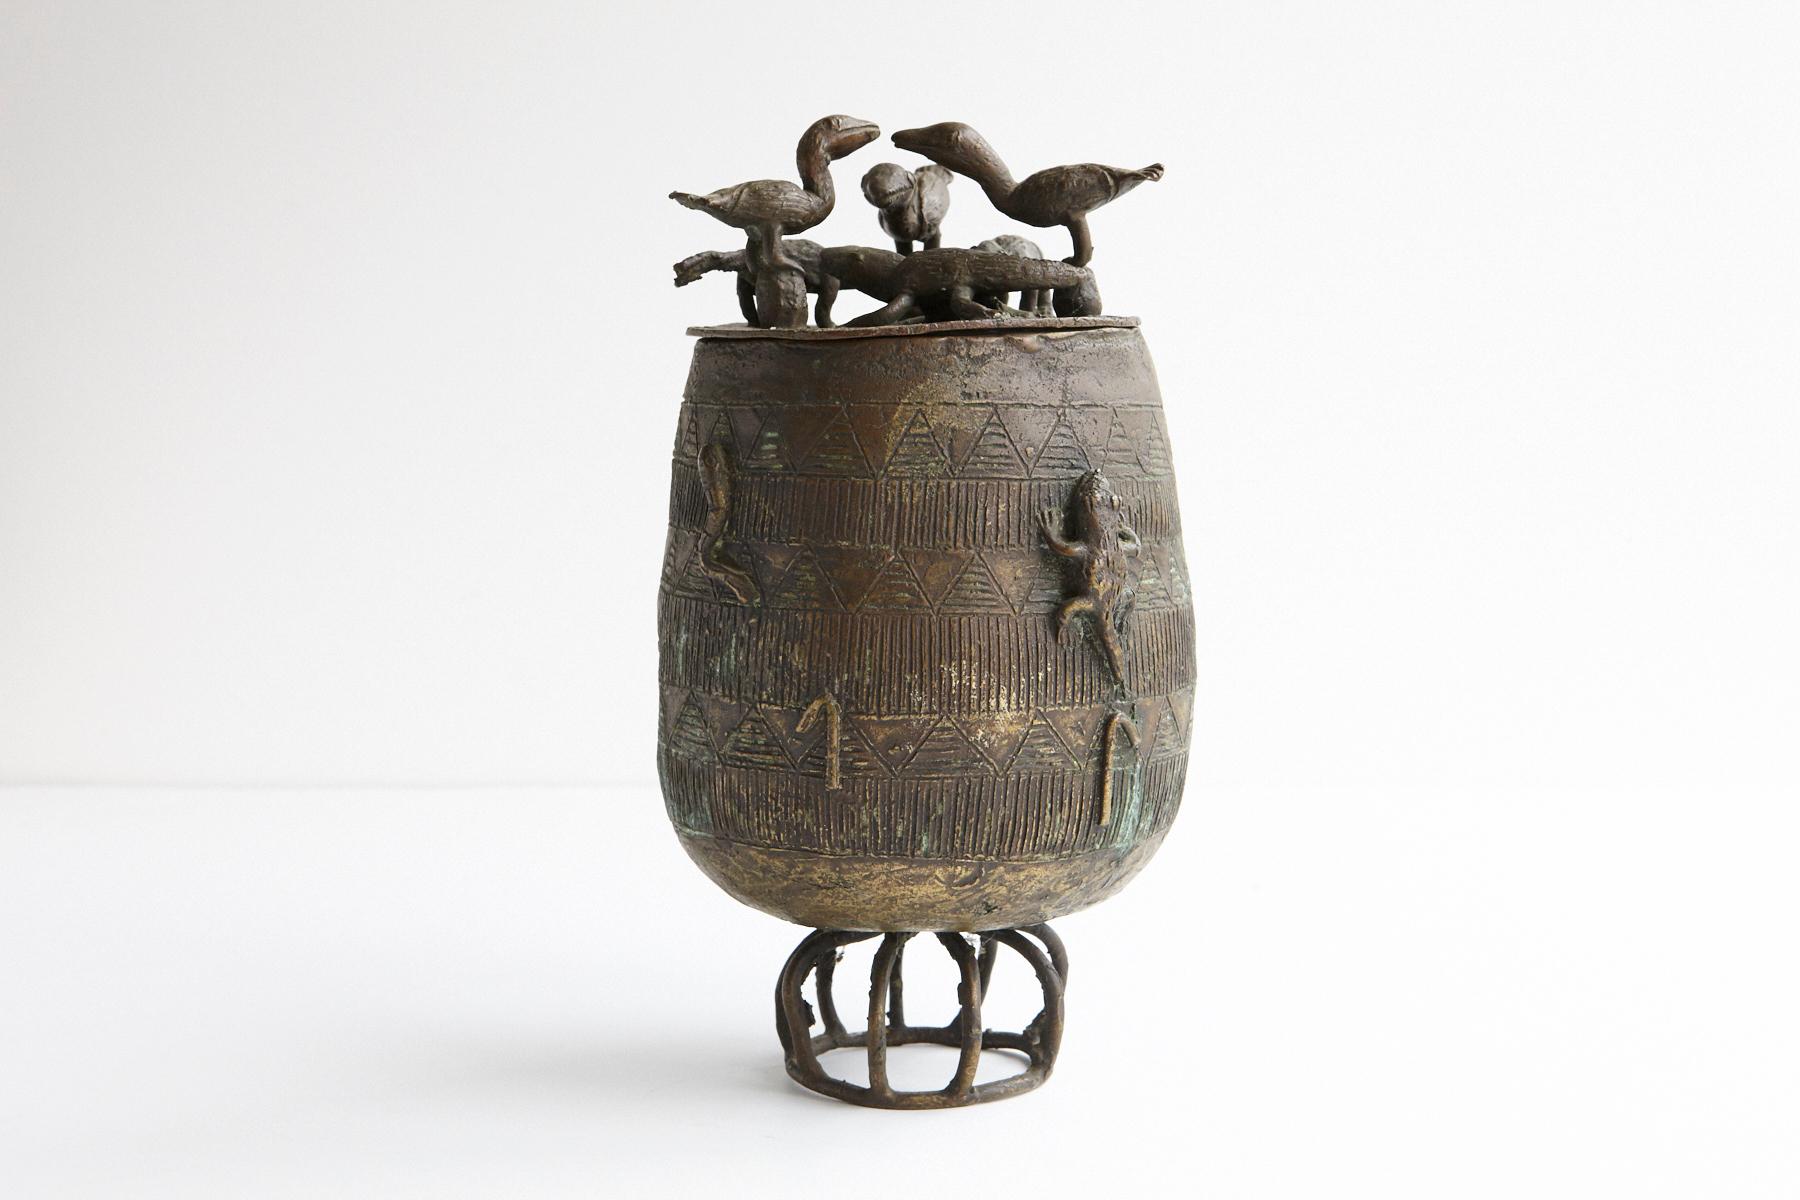 Magnifique récipient en bronze, pot ovoïde à couvercle sur un support circulaire, fabriqué par le peuple Asante, Ghana. Couvercle joliment moulé avec 7 figures en forme d'animaux et de reptiles sont représentés sur le côté du récipient, rampant sur